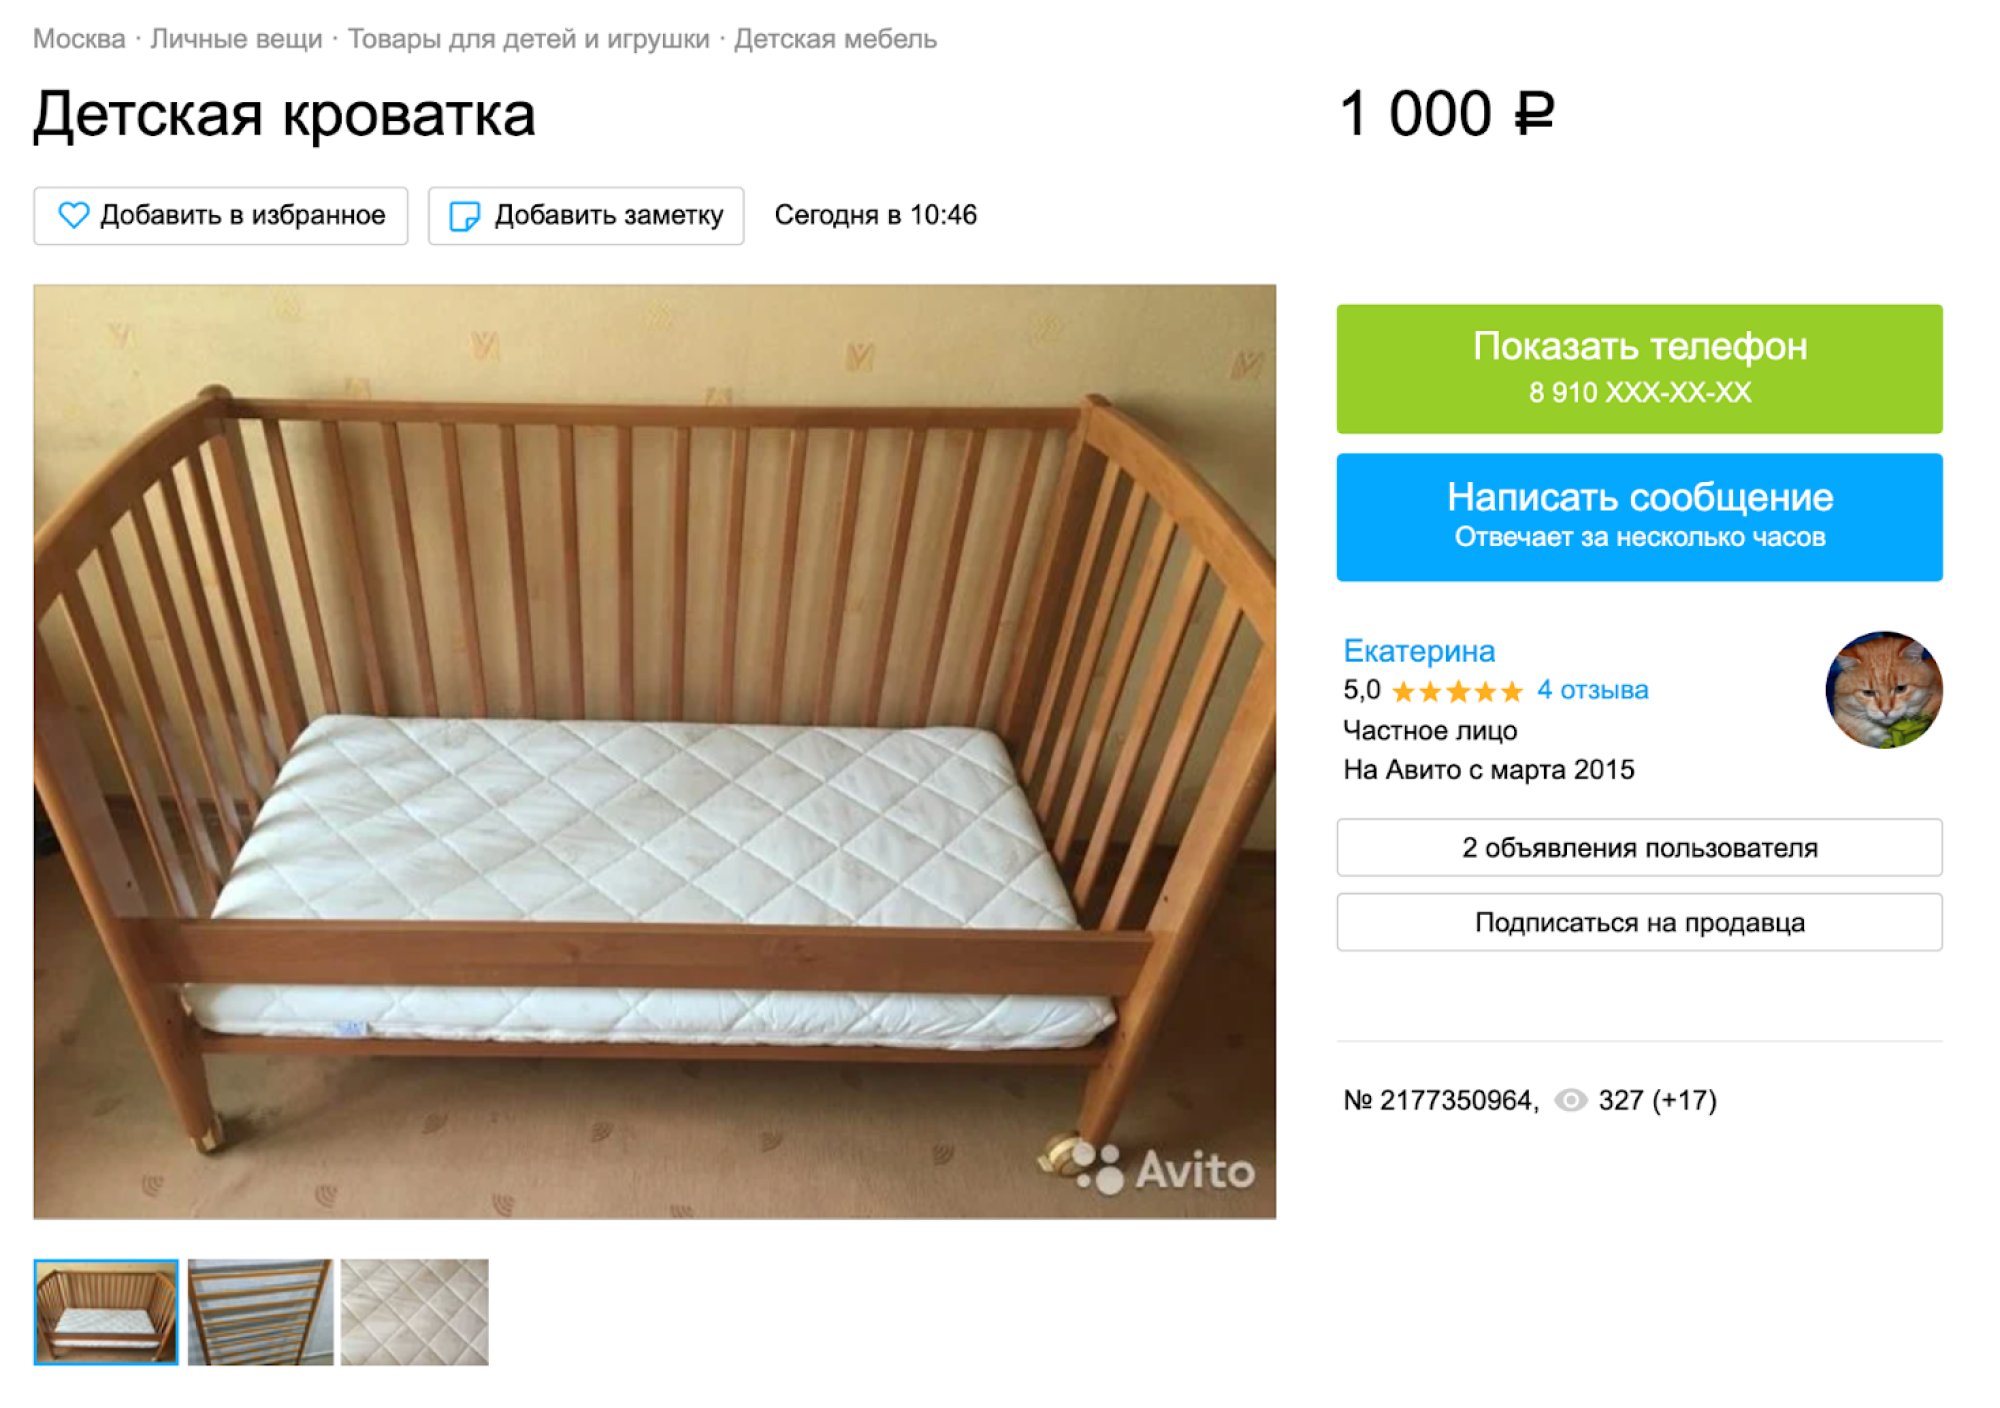 Кровать для новорожденного или люлька?